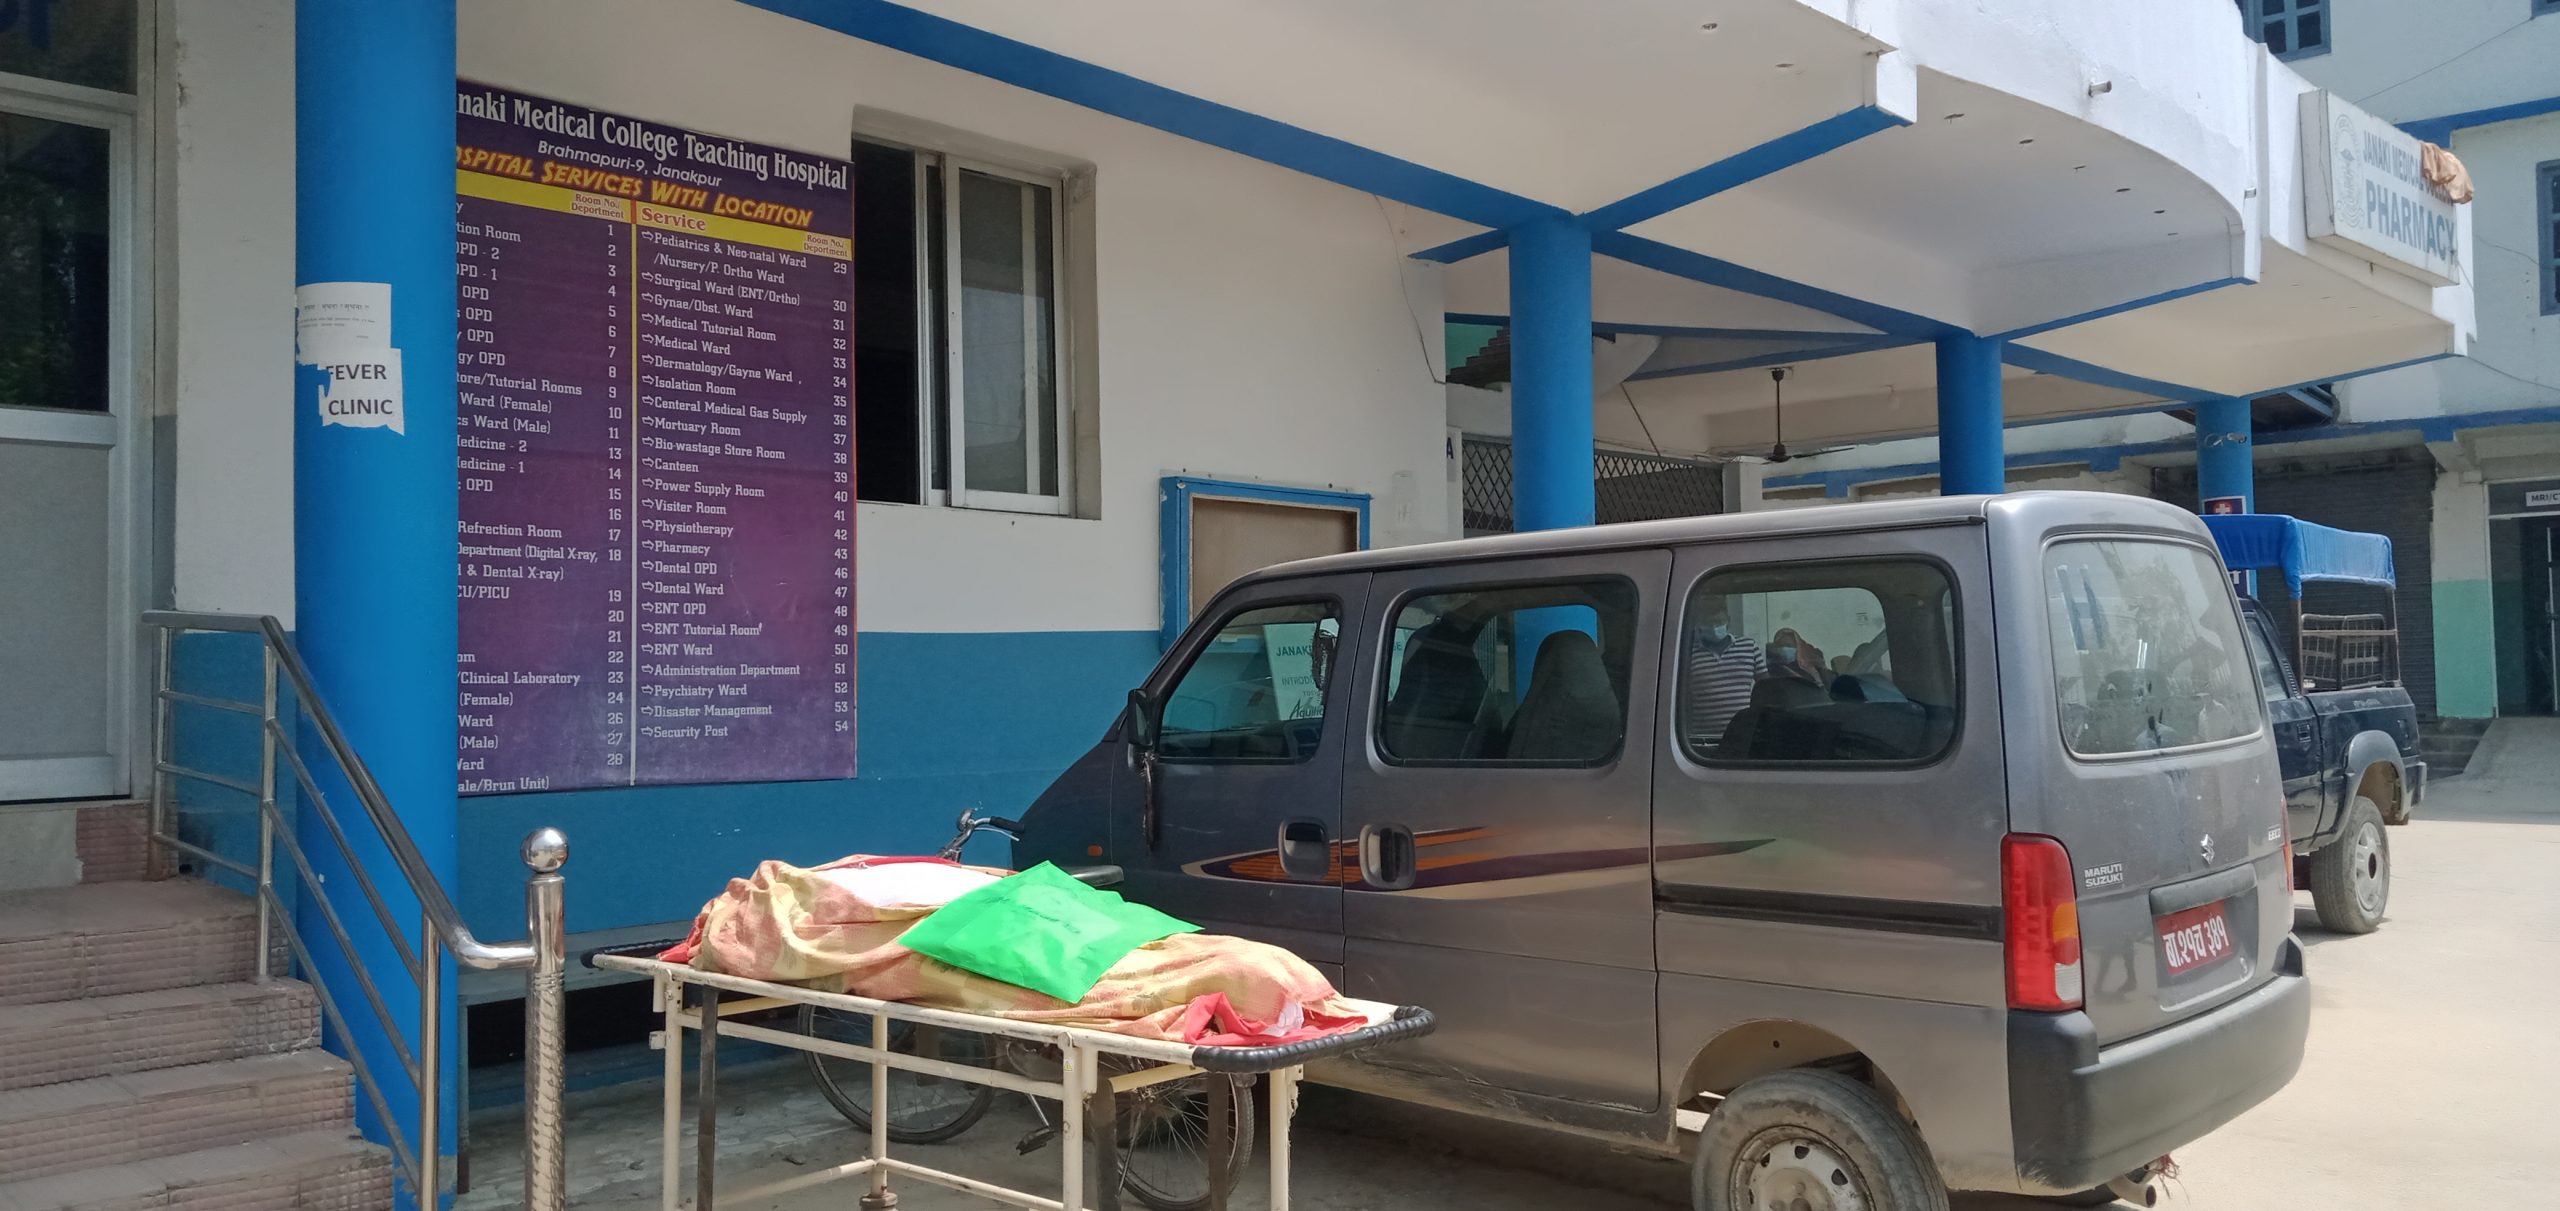 जनकपुरको एक अस्पतालमा ‘लाश’माथि बार्गेनिङ, रकमी छलछामै ढाकिन्छ डाक्टरको लापरबाही